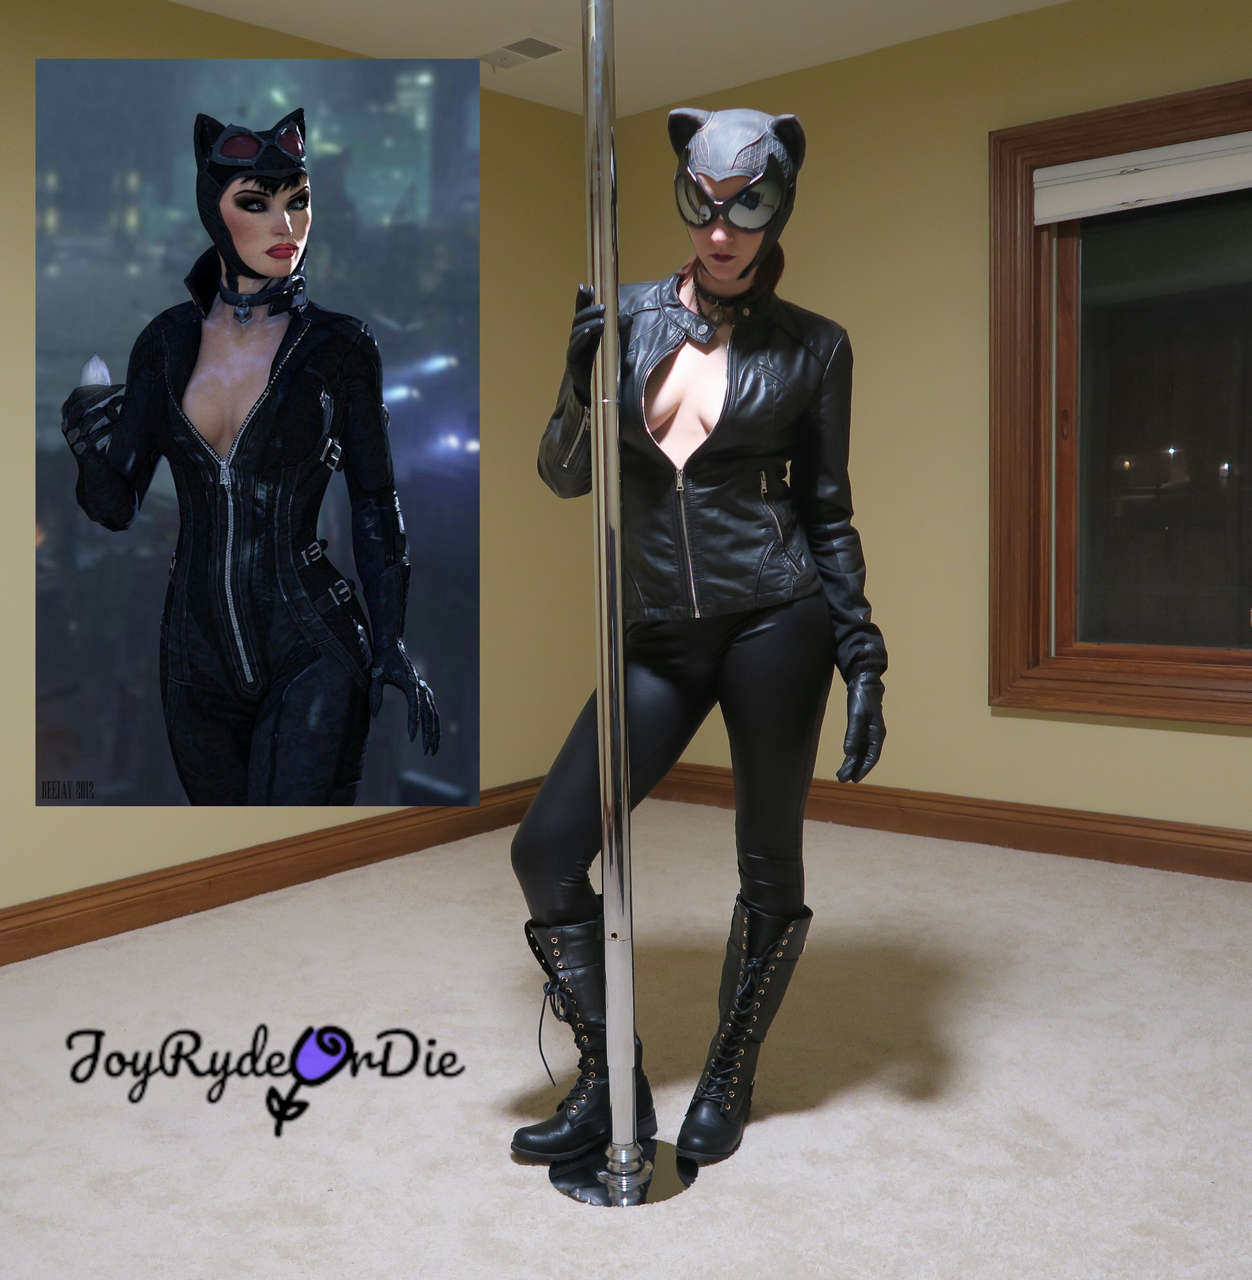 Joyrydeordie As Catwoman F O